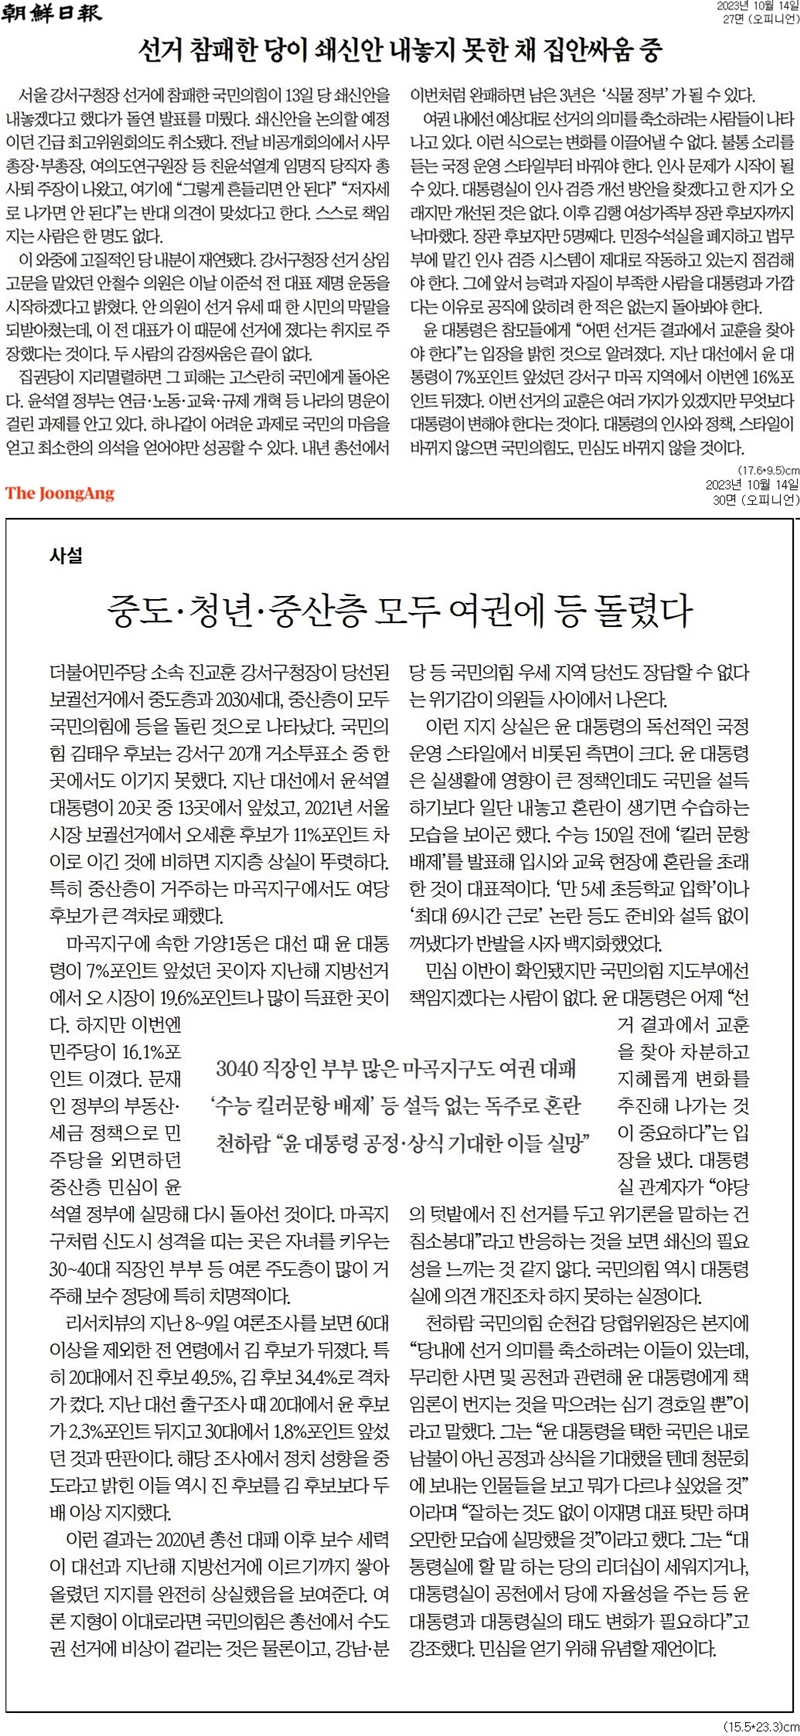 ▲ 14일자 조선일보, 중앙일보 사설